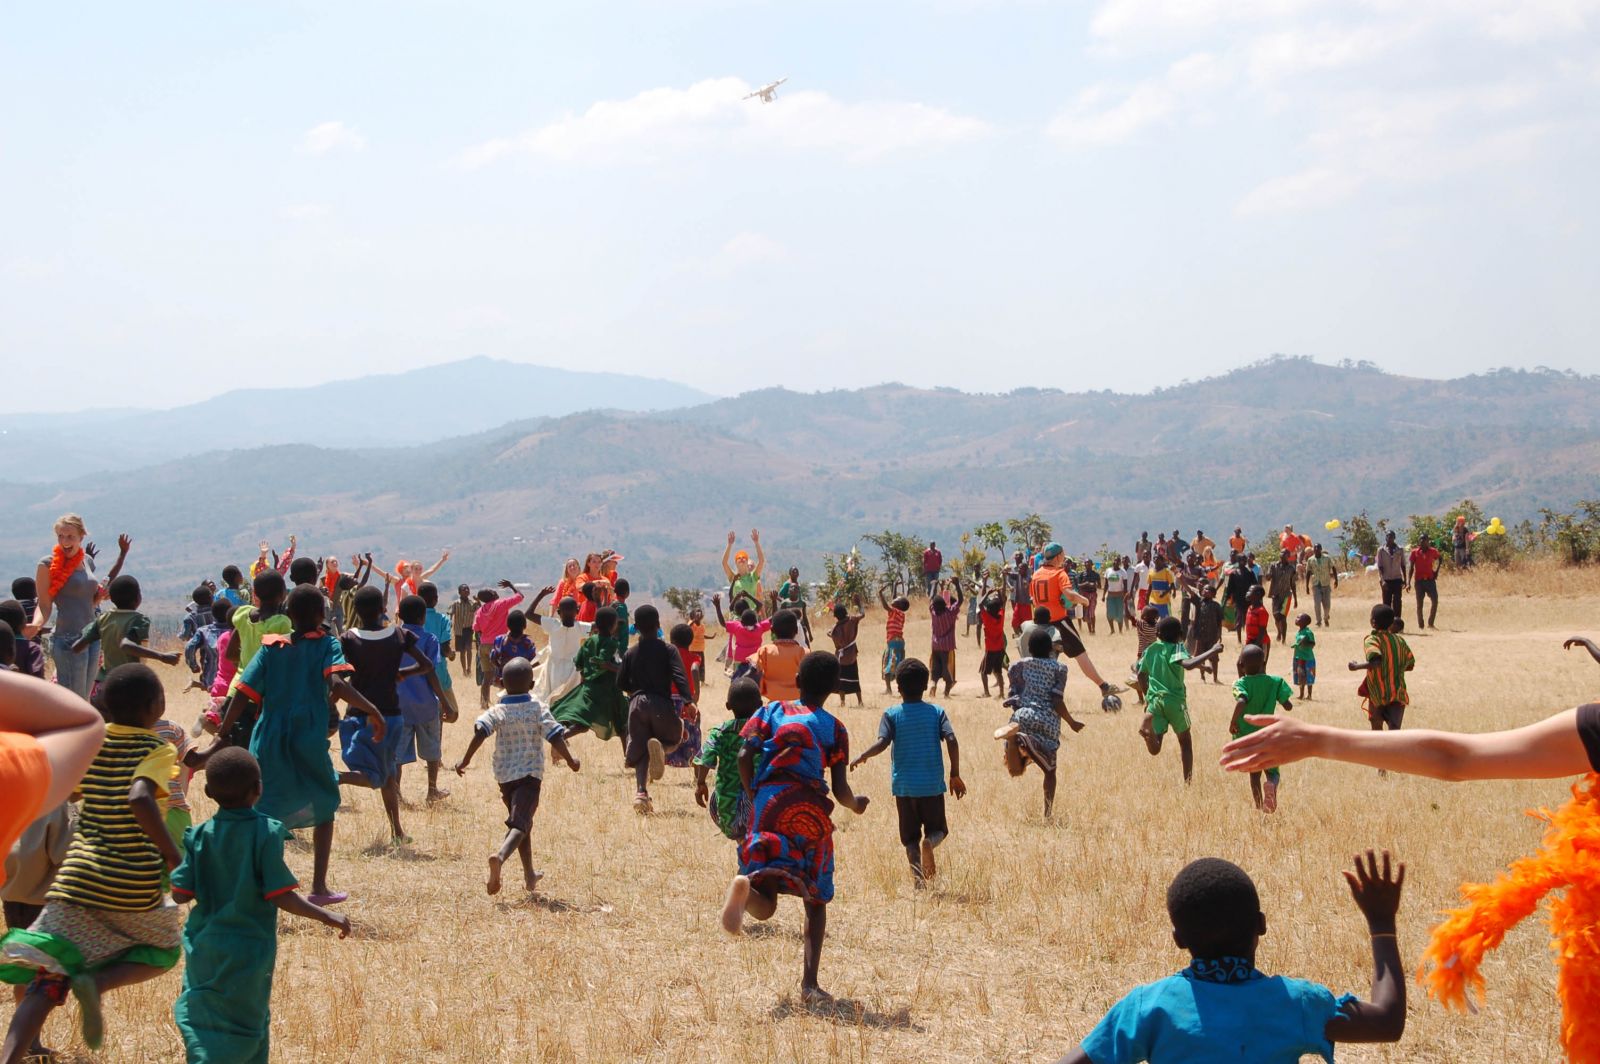 Kinderen in Malawi